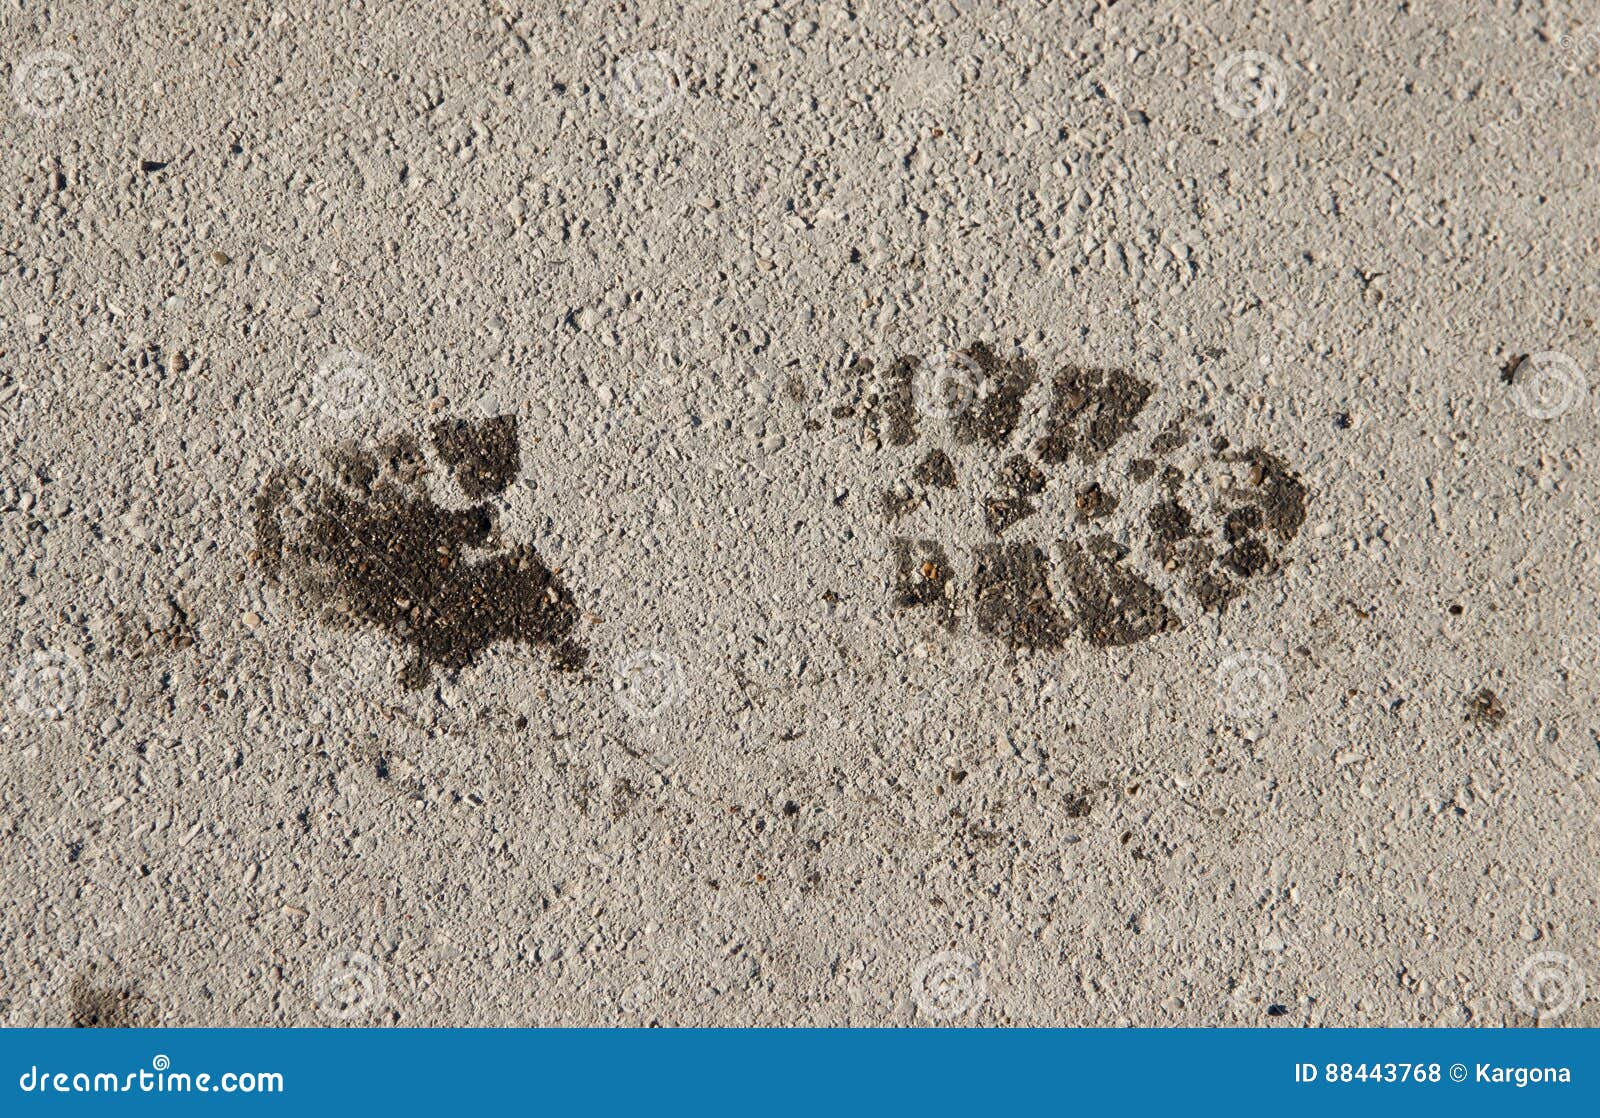 Не было видно следов. Отпечатки мокрых ног на полу клипарт фото. К чему снятся следы на полу от обуви. Фото мокрых следов сверху.